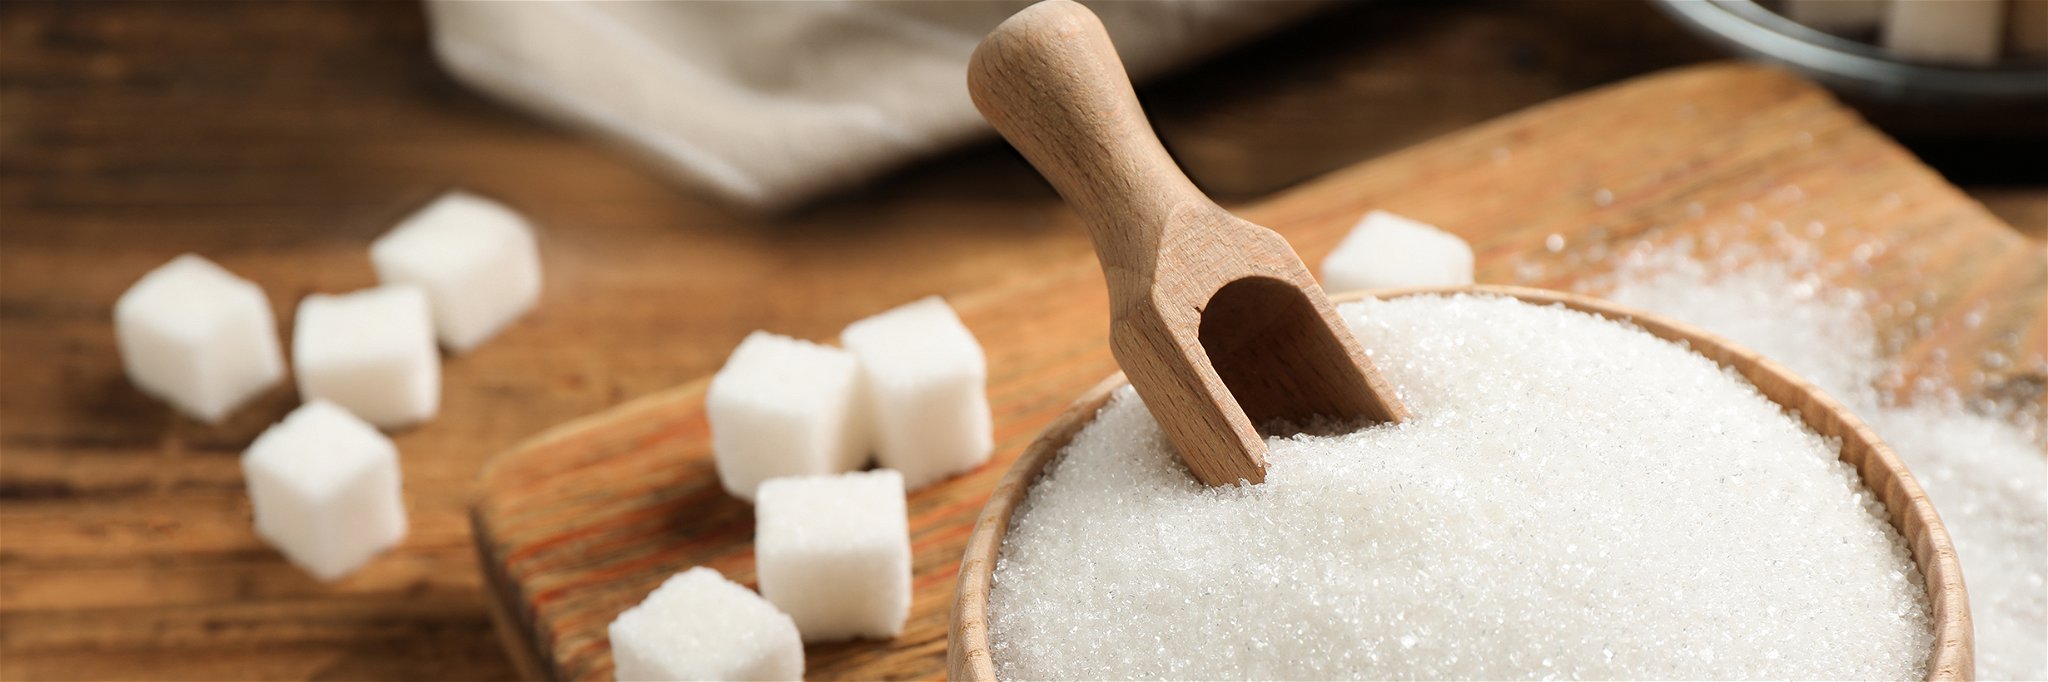 Die Auswirkungen von Zucker auf die Gesundheit werden nun genauer unter die Lupe genommen.